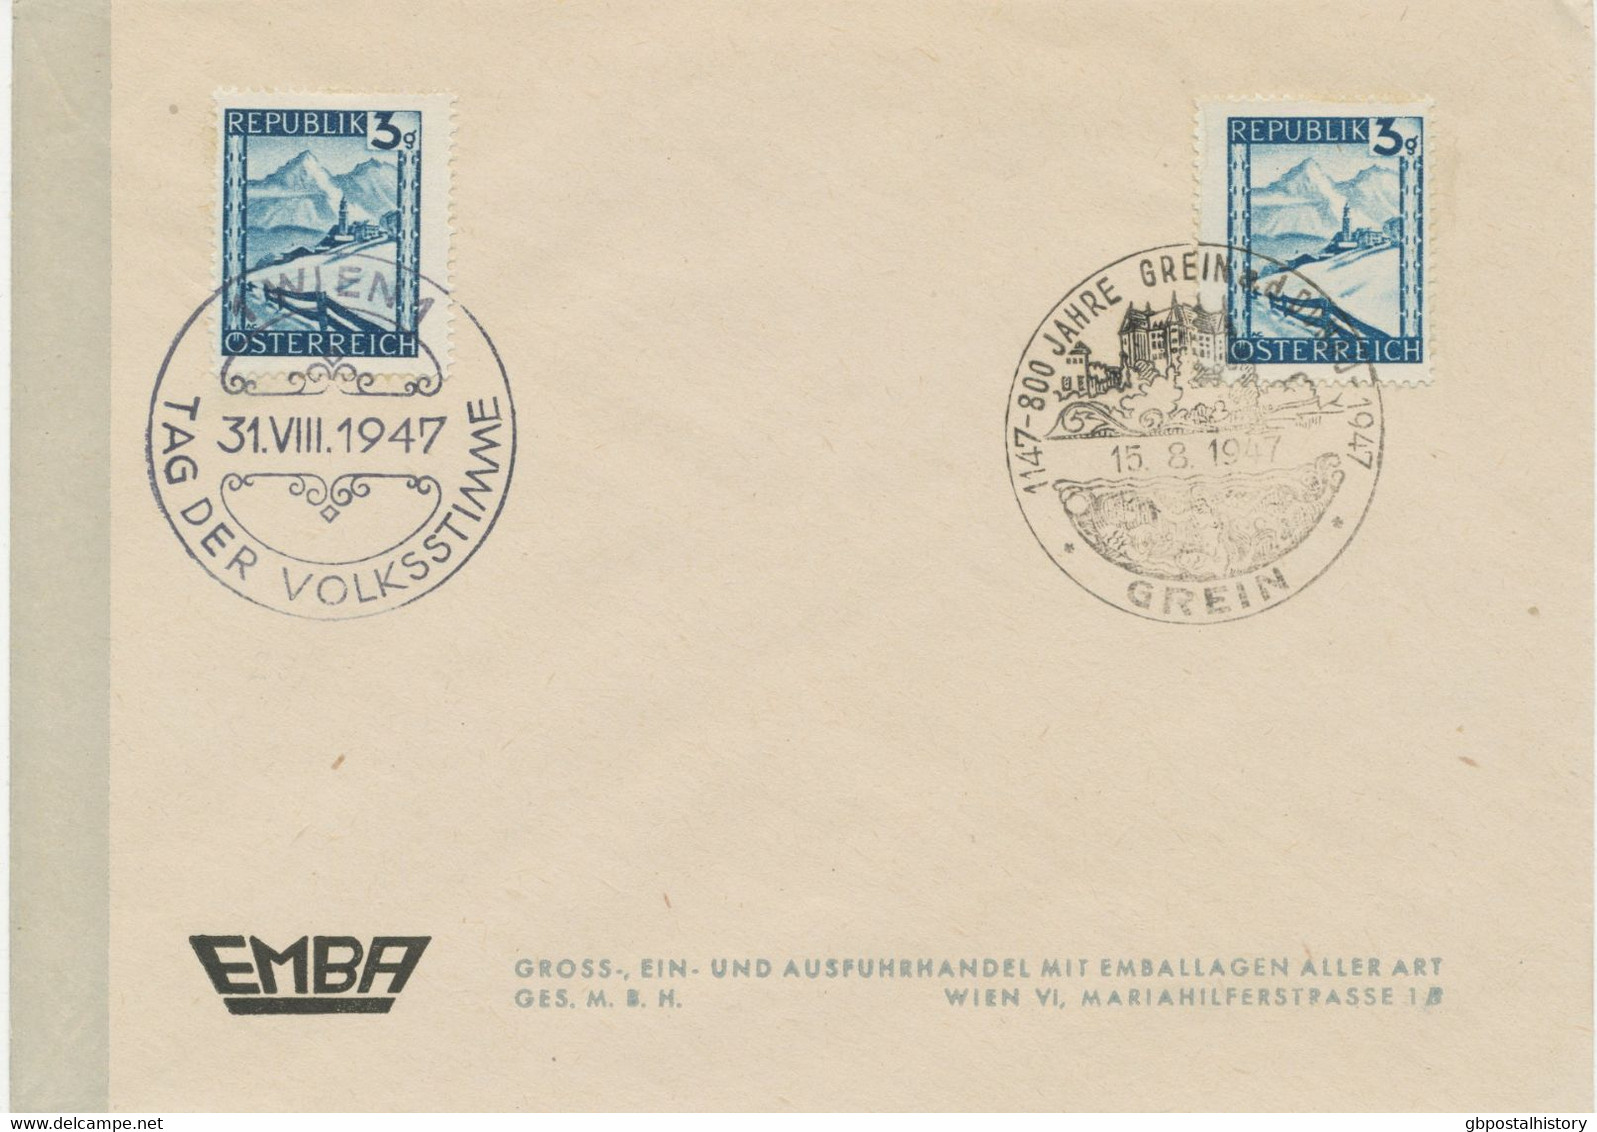 ÖSTERREICH SONDERSTEMPEL 1947 „1147 – 800 JAHRE GREIN A.d. DONAU – 1947 15.8.1947 GREIN“ + „1 WIEN 1 – 31.VIII.1947 TAG - Covers & Documents